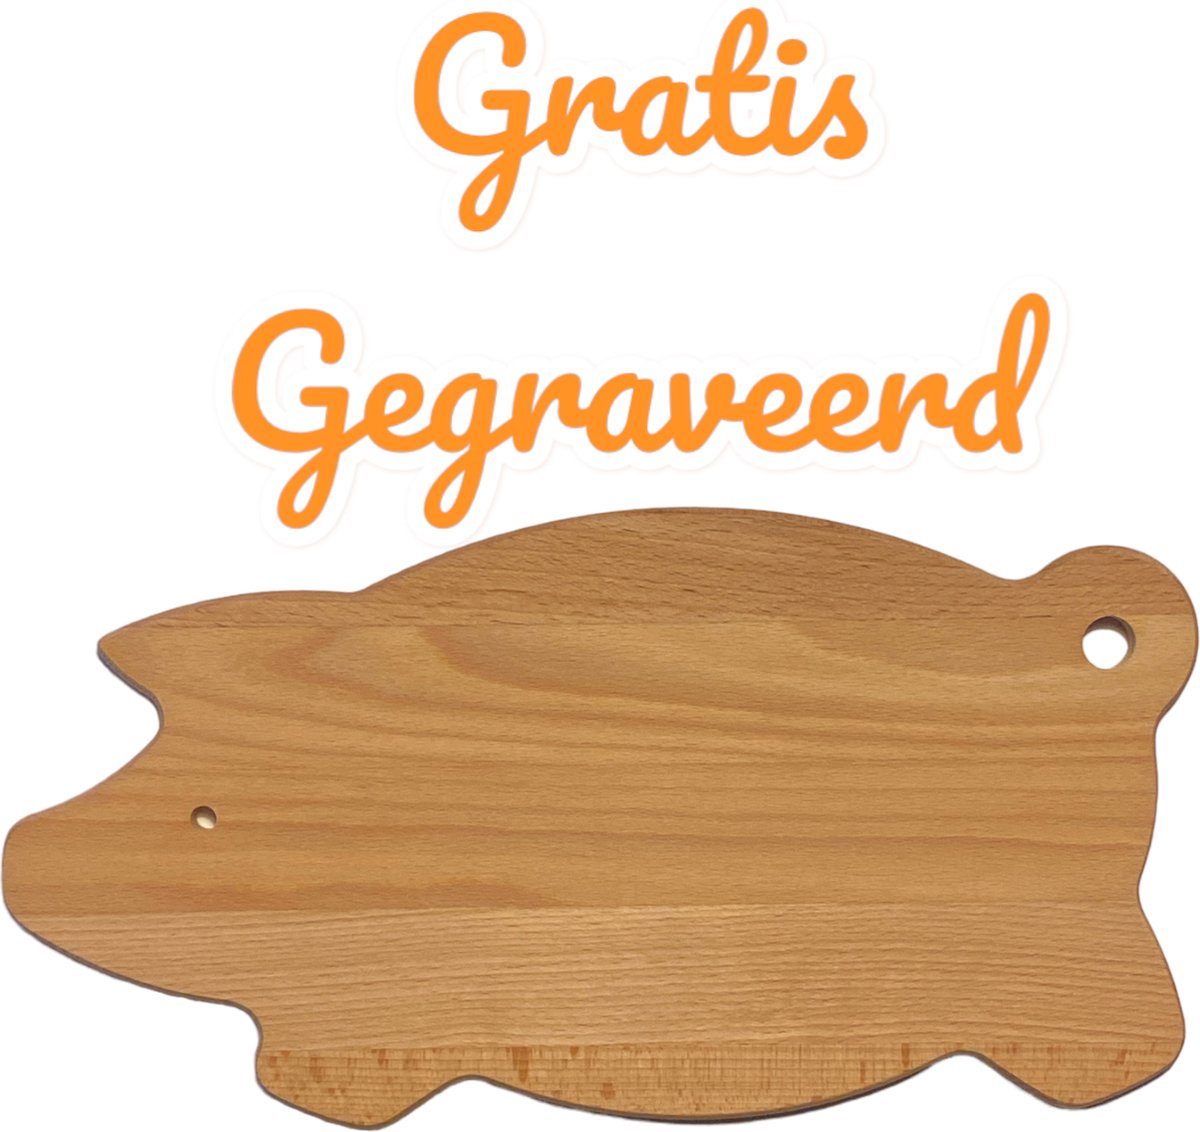 Serveerplank - GRATIS Gegraveerd - Leuk kado - Varkentjes vorm - 29 x 15 cm. - Leuk Cadeau - persoonlijk Valentijns cadeau